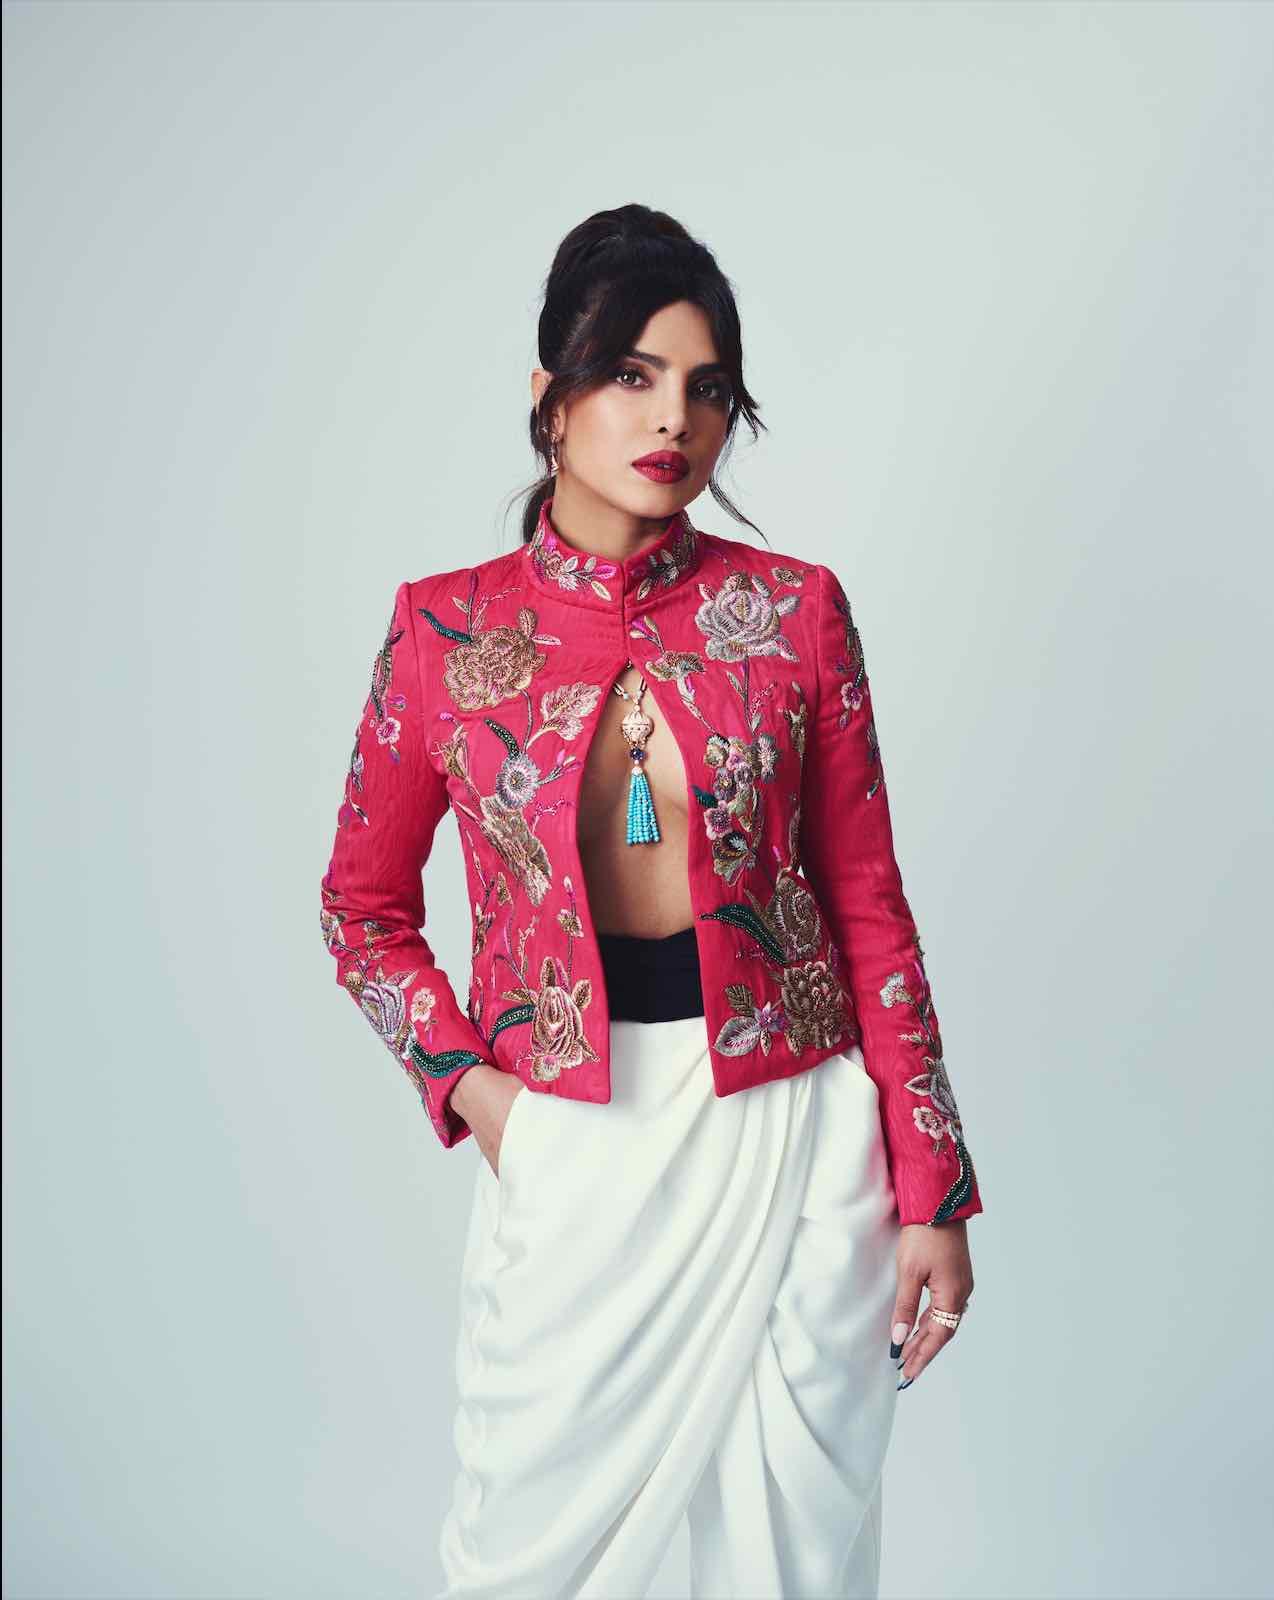 (Priyanka Chopra yang merupakan brand ambassador dari Bulgari tampil mengenakan koleksi Bulgari high jewellery saat menghadiri EE BAFTAs 2021)